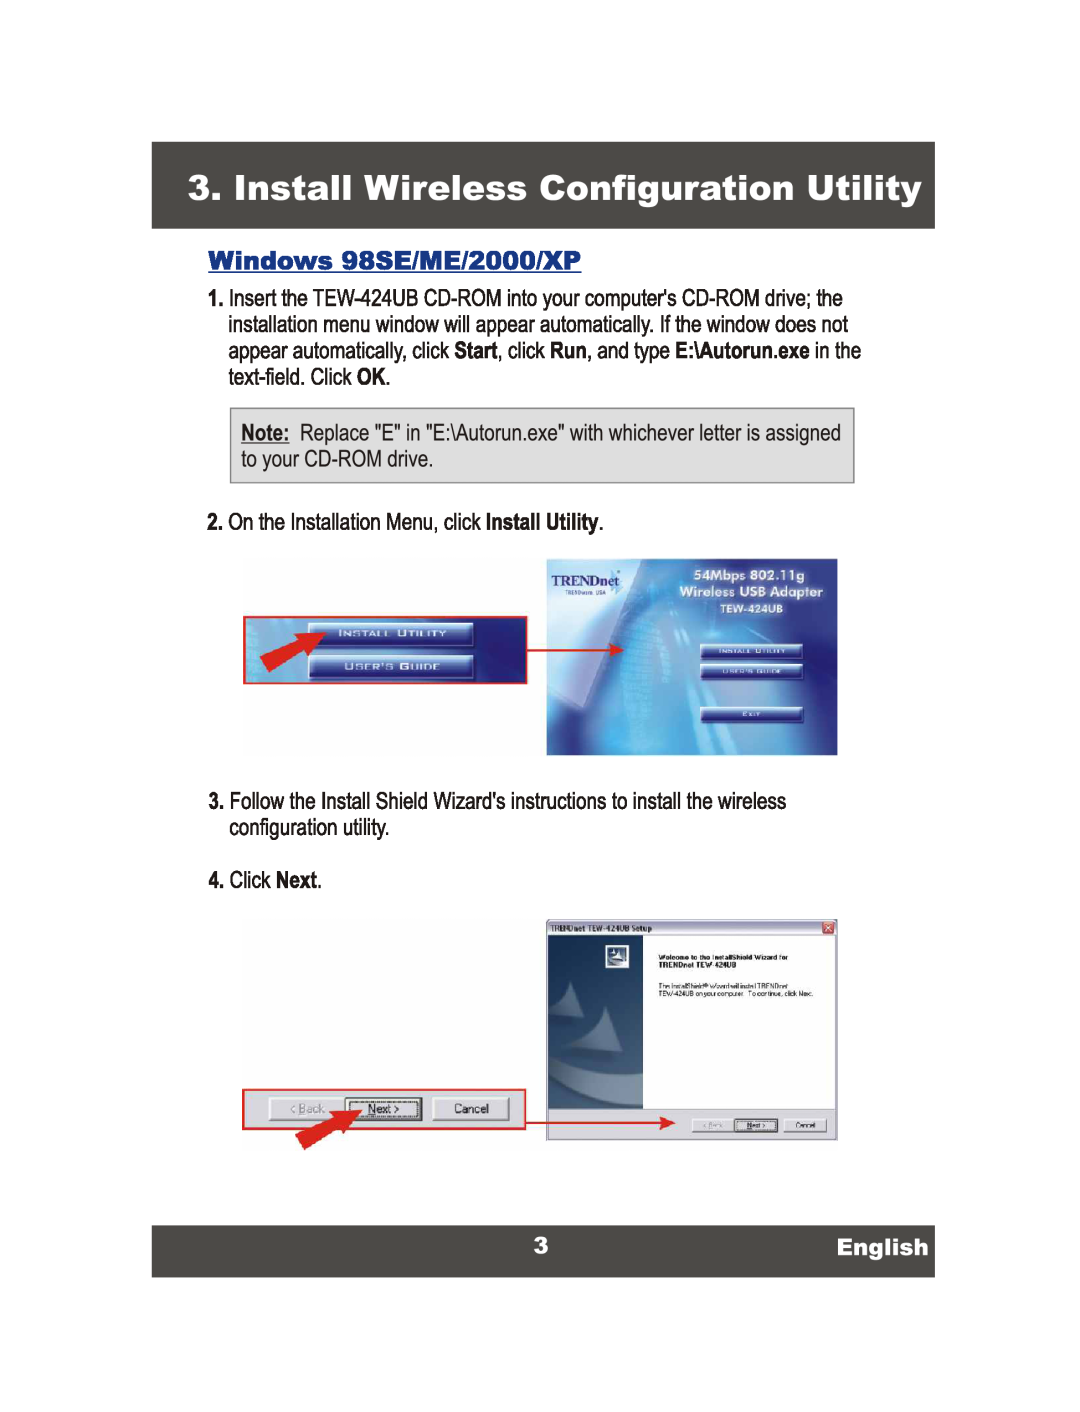 TRENDnet Wireless USB 2.0 Adaptor, TEW-424UB manual 